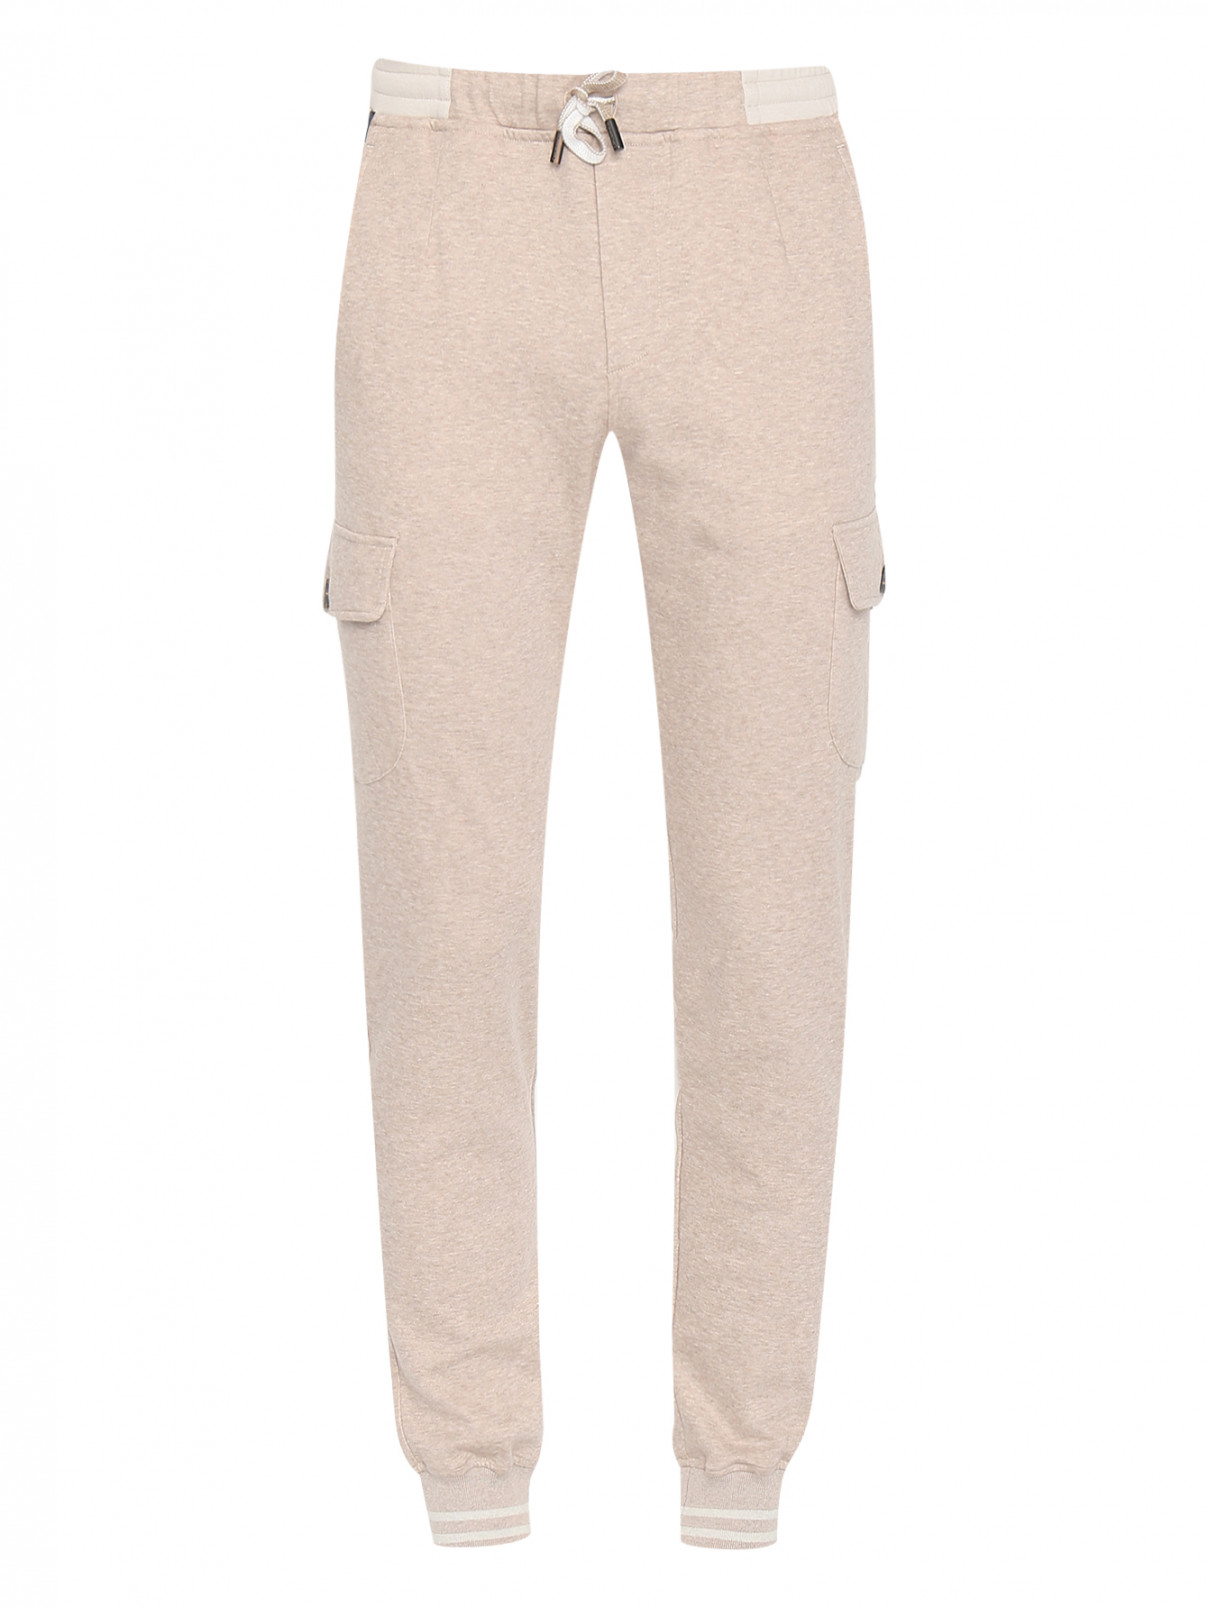 Трикотажные брюки из хлопка с карманами Capobianco  –  Общий вид  – Цвет:  Бежевый